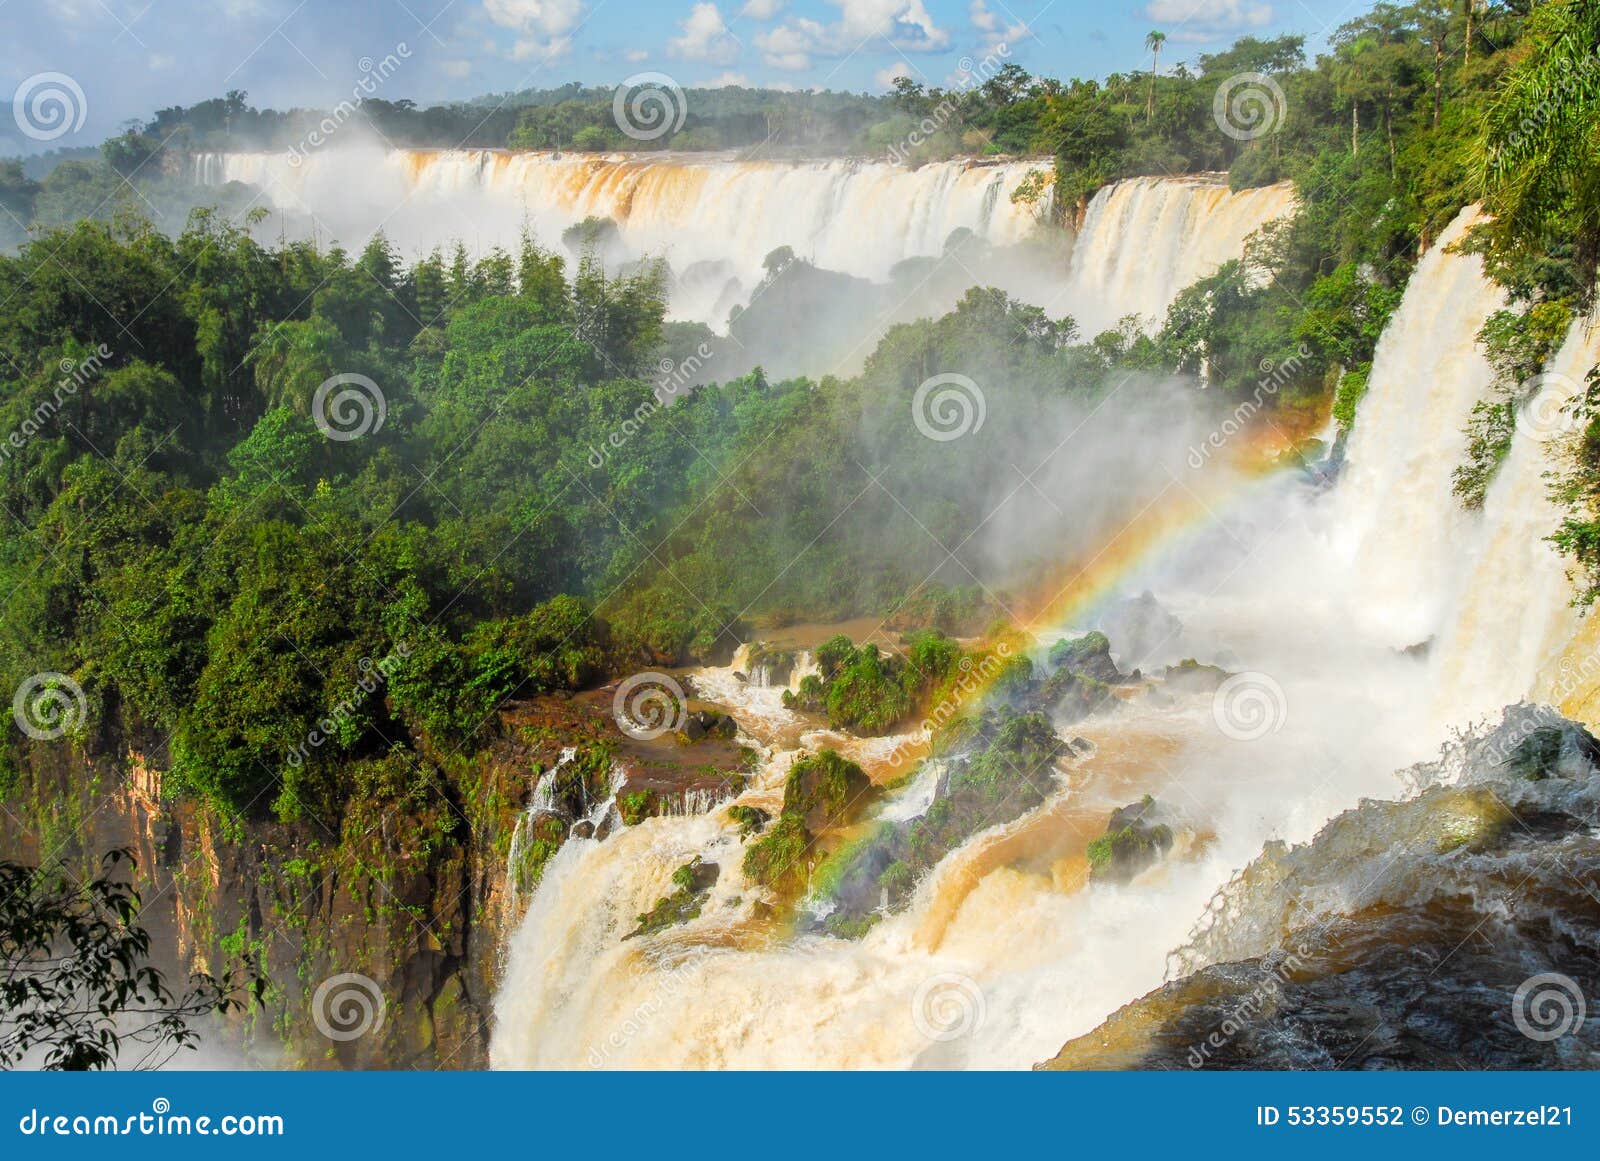 伊瓜苏瀑布,世界的瀑布最多的系列,位于巴西和阿根廷边界,从阿根廷边图片